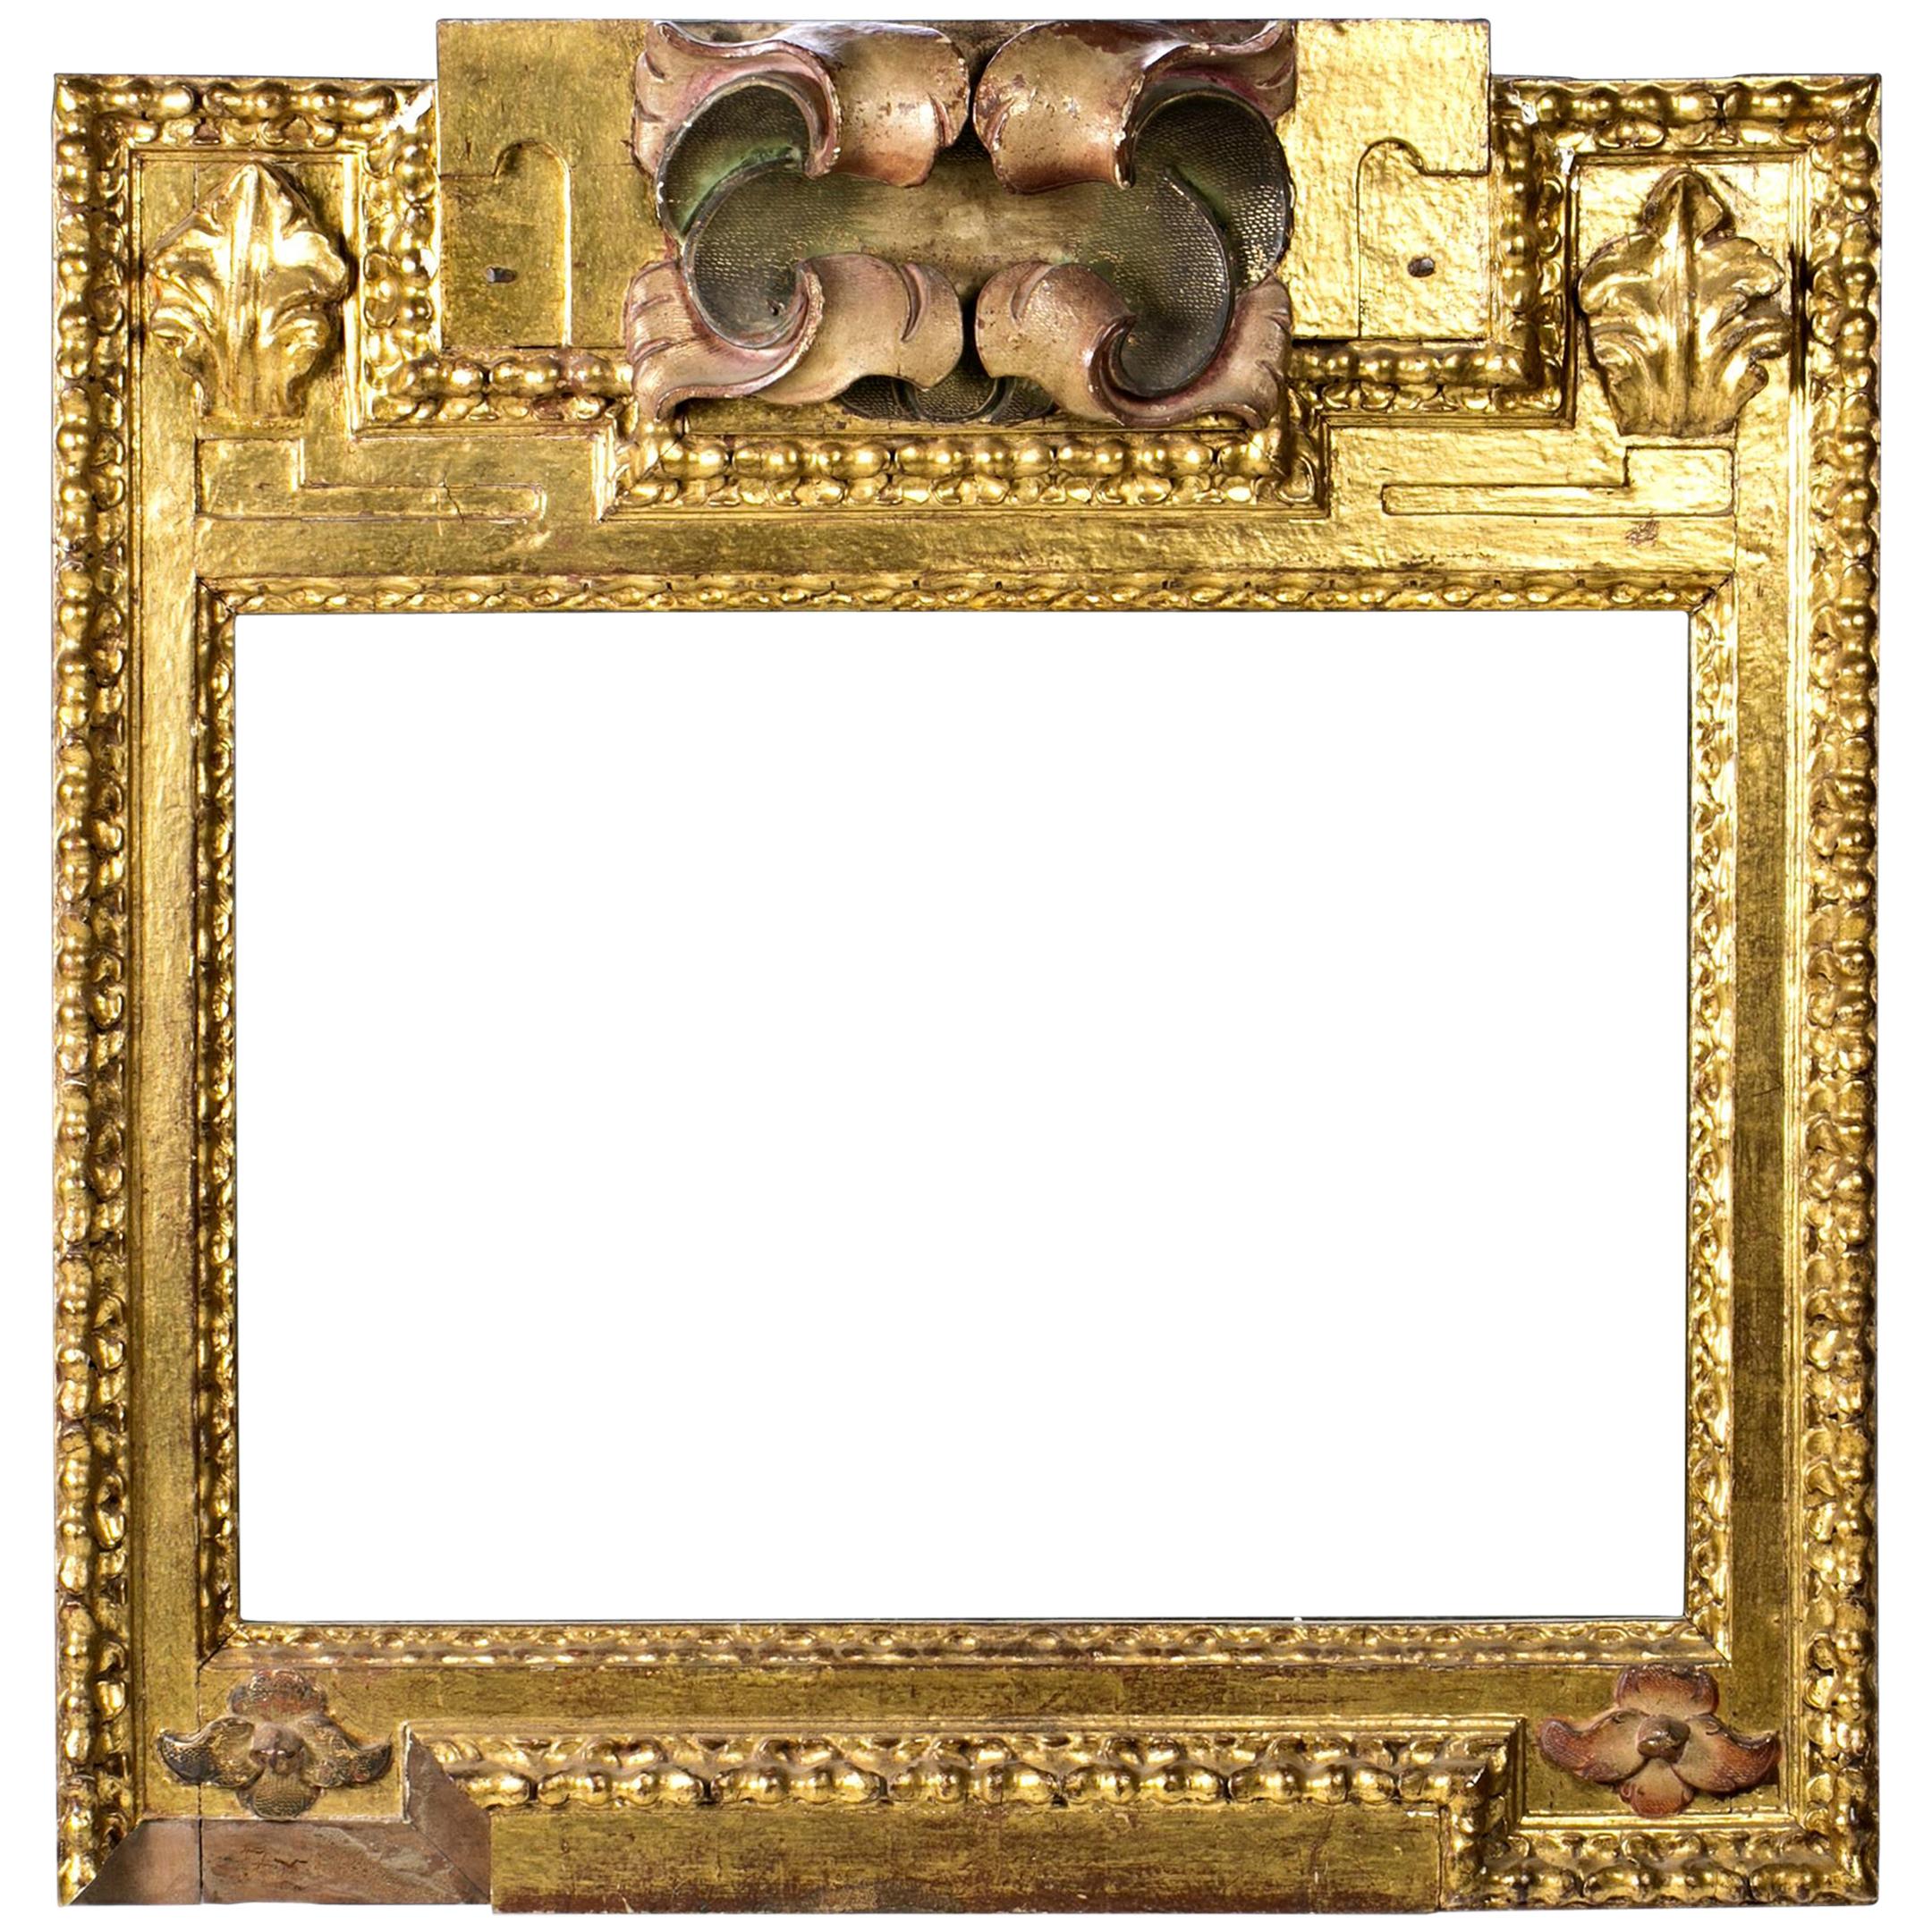 Cadre. Bois doré et polychrome, XVIIe siècle.
Présente une perte dans la zone inférieure gauche.
Cadre en bois sculpté, doré et polychrome dans certaines zones, qui présente une décoration à base de bandes (alternant les lisses avec d'autres avec